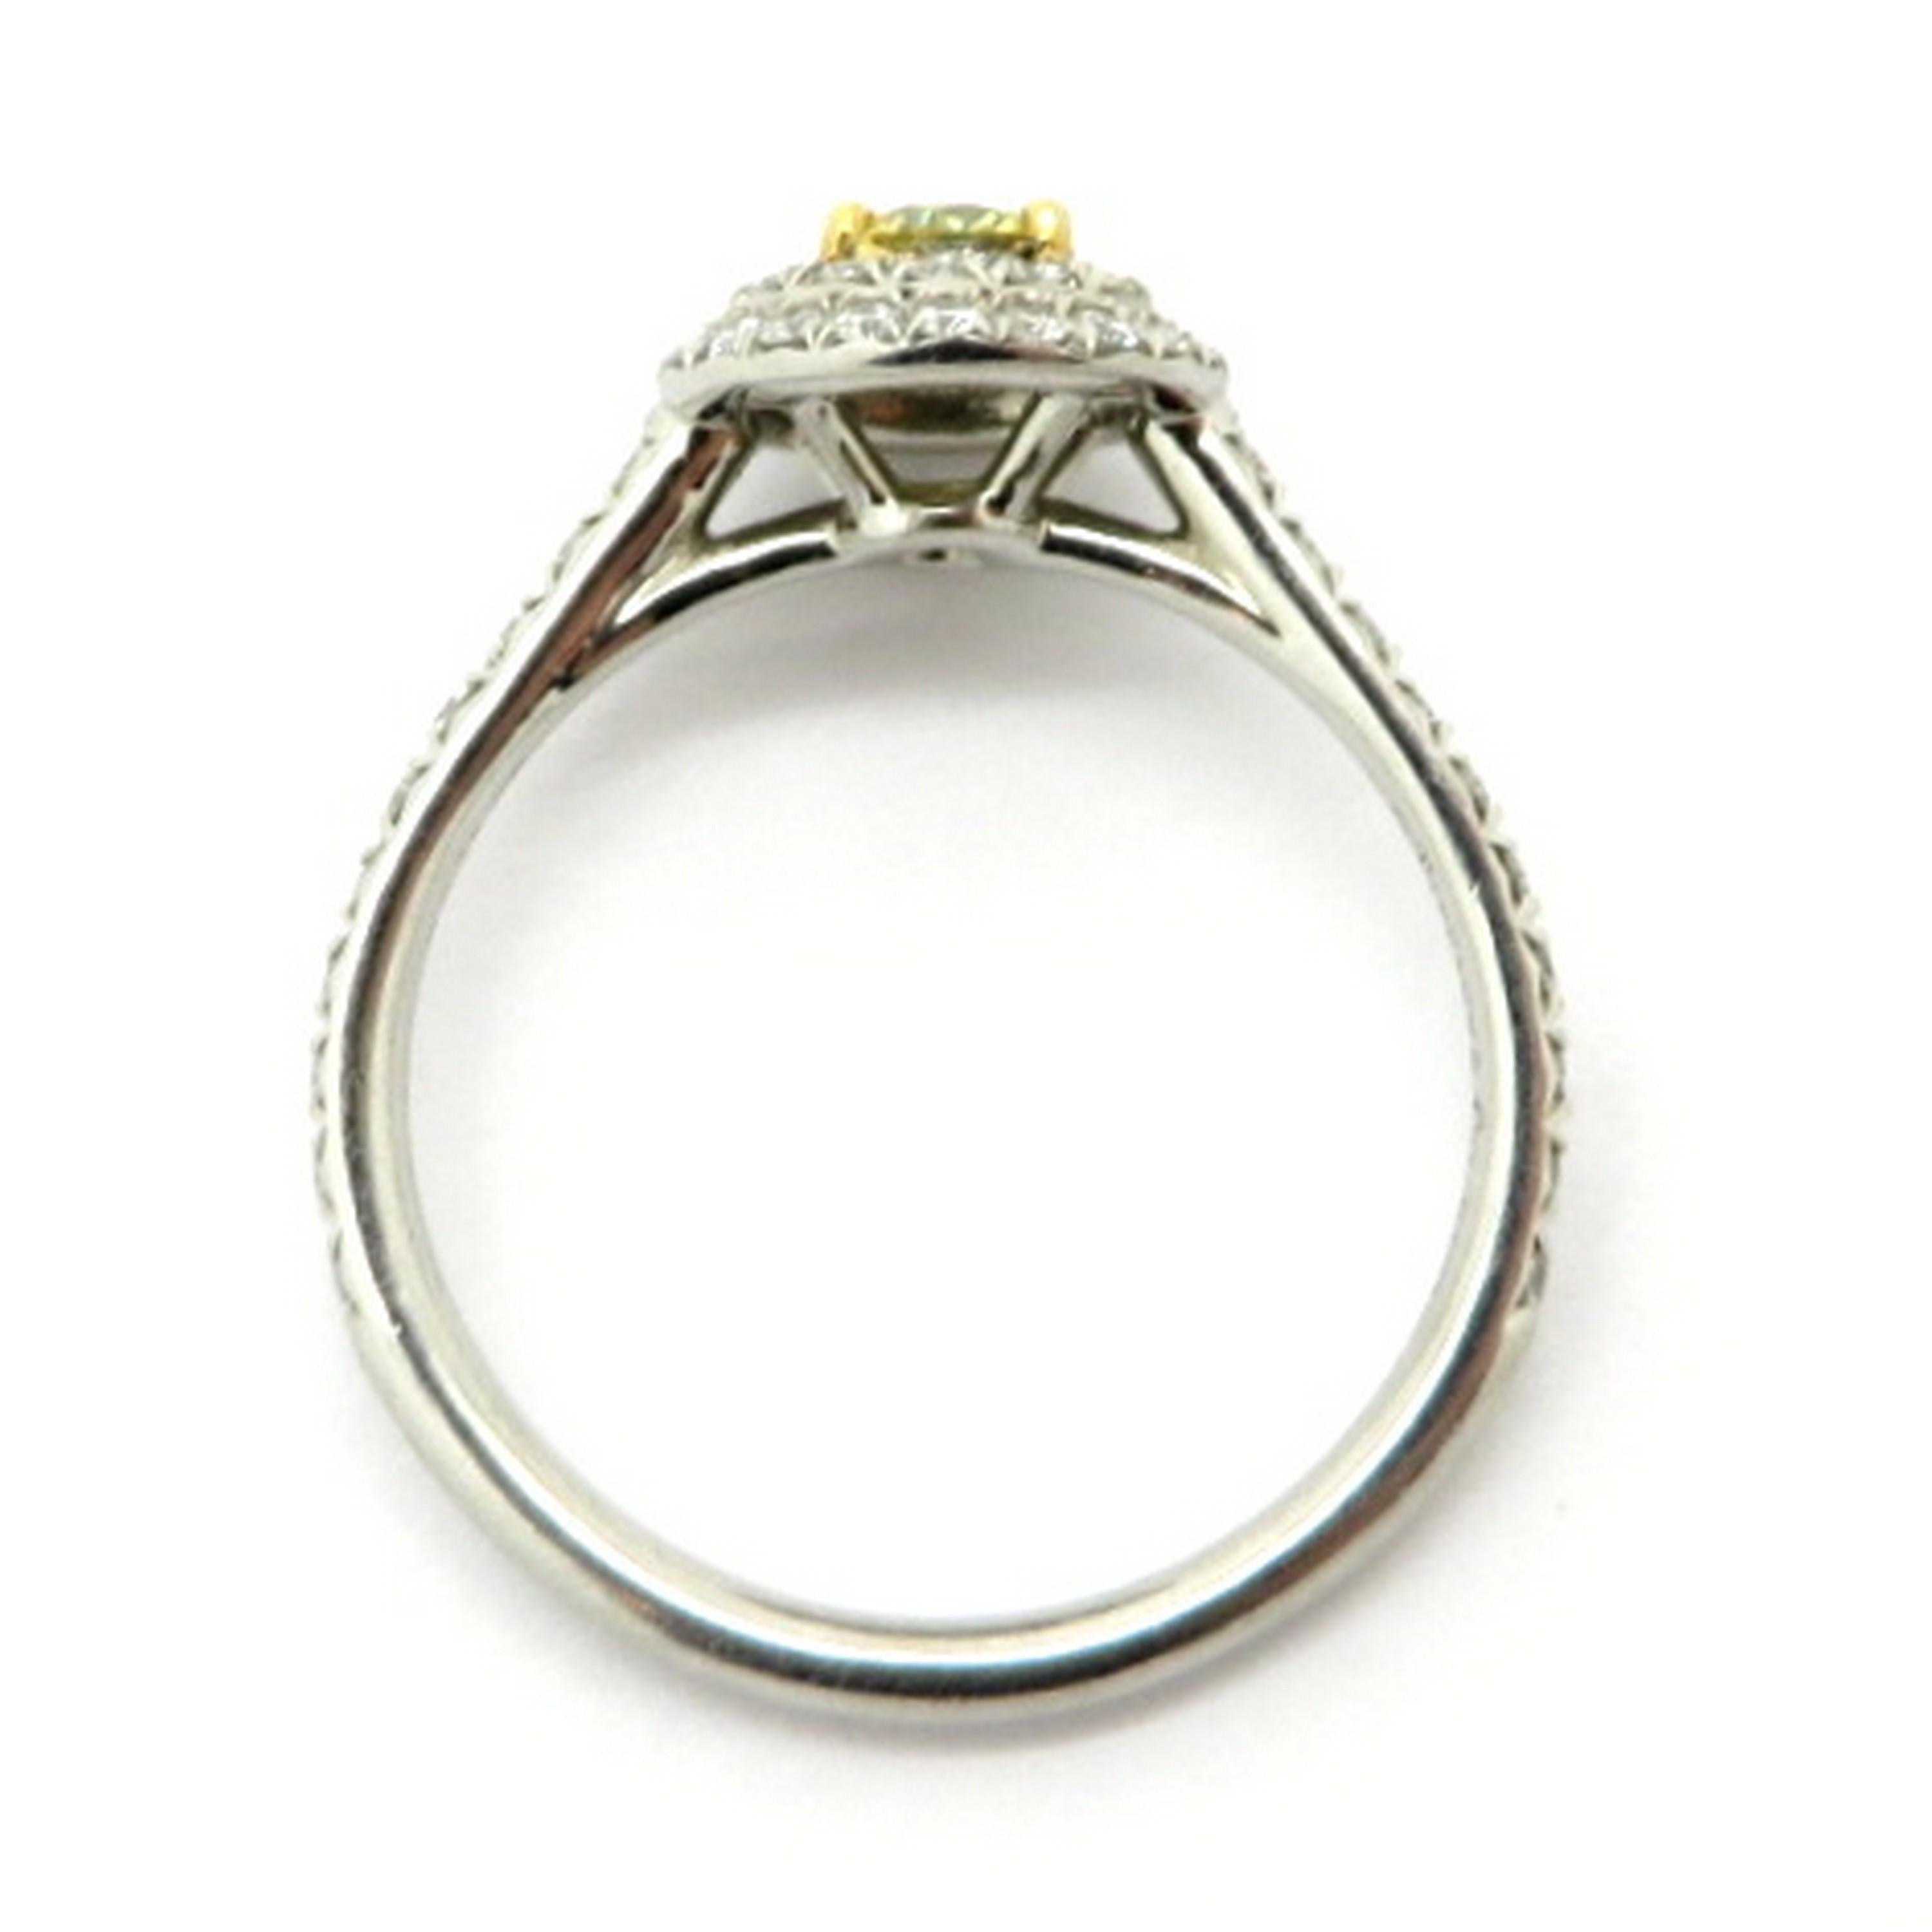 tiffany yellow diamond ring